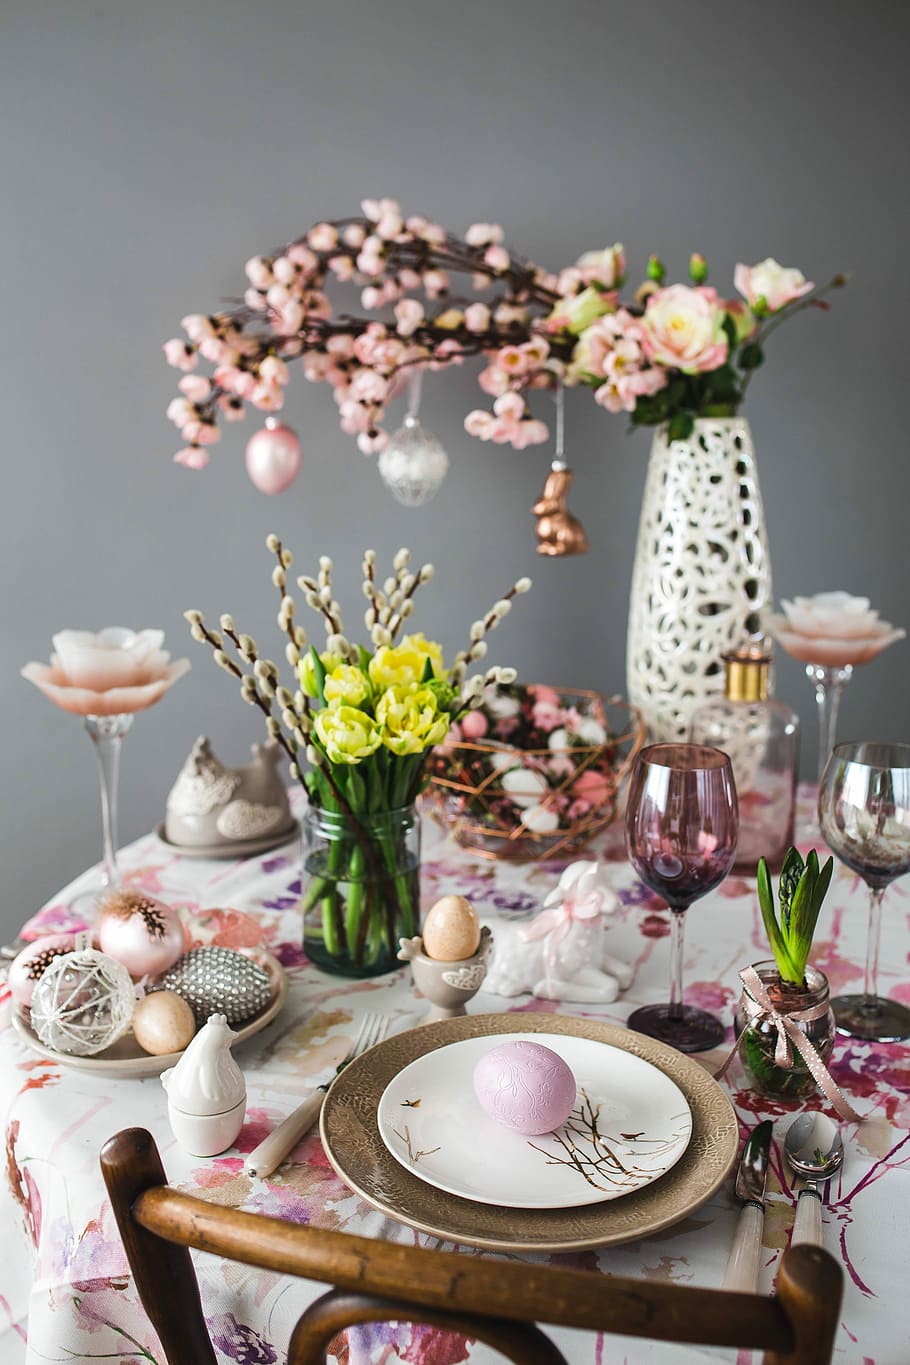 かわいい, ピンク, 装飾, 花, 尾状花序, 卵, イースターテーブル, テーブル, 甘い, 休日